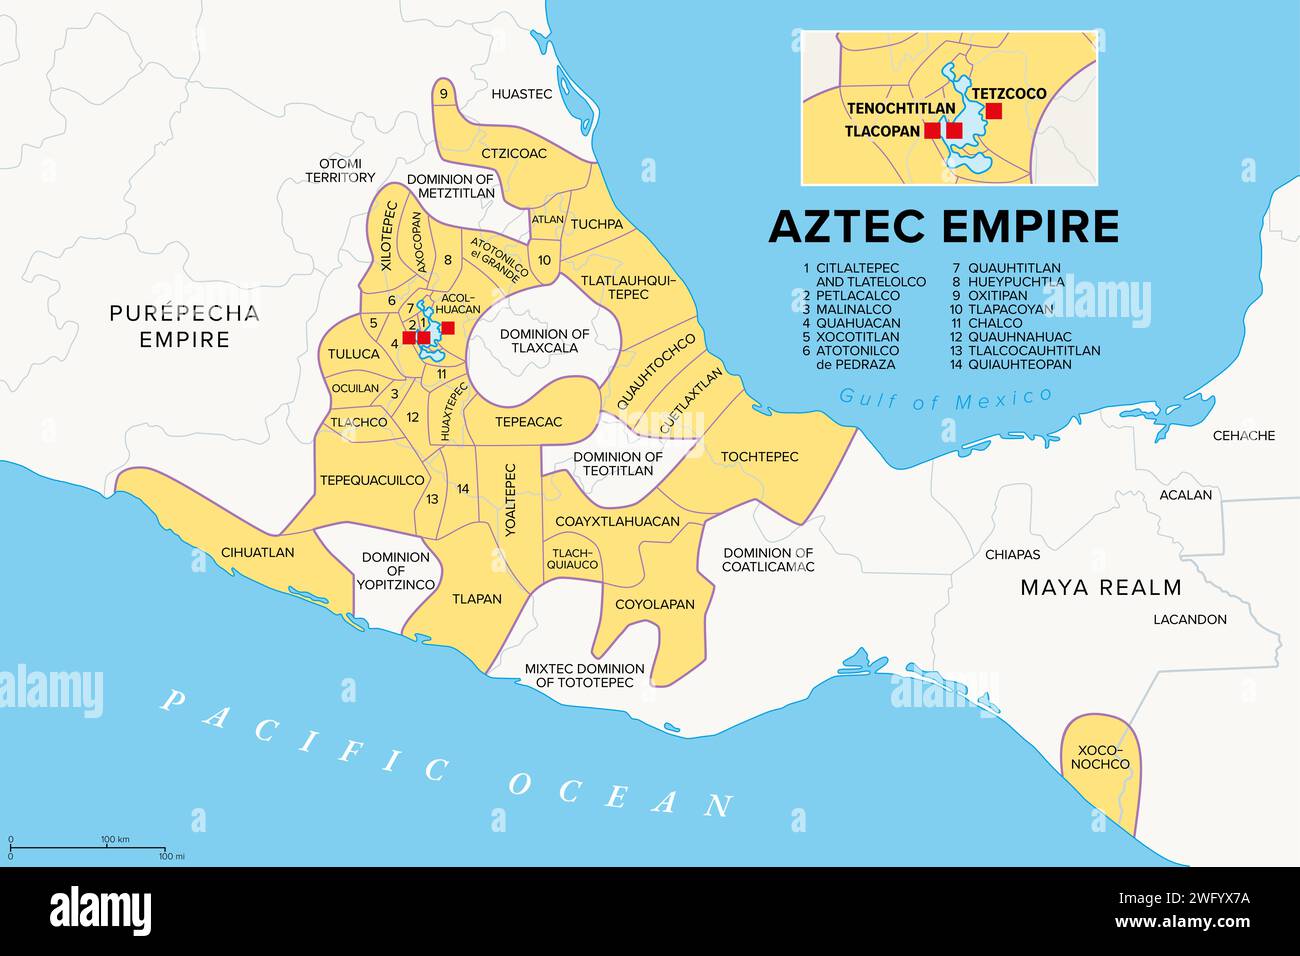 Aztekenreich mit Nebenprovinzen, Geschichtskarte. Maximales Ausmaß von Triple Alliance Tenochtitlan, Tetzcoco und Tlacopan zur Zeit des spanischen Conqu Stockfoto